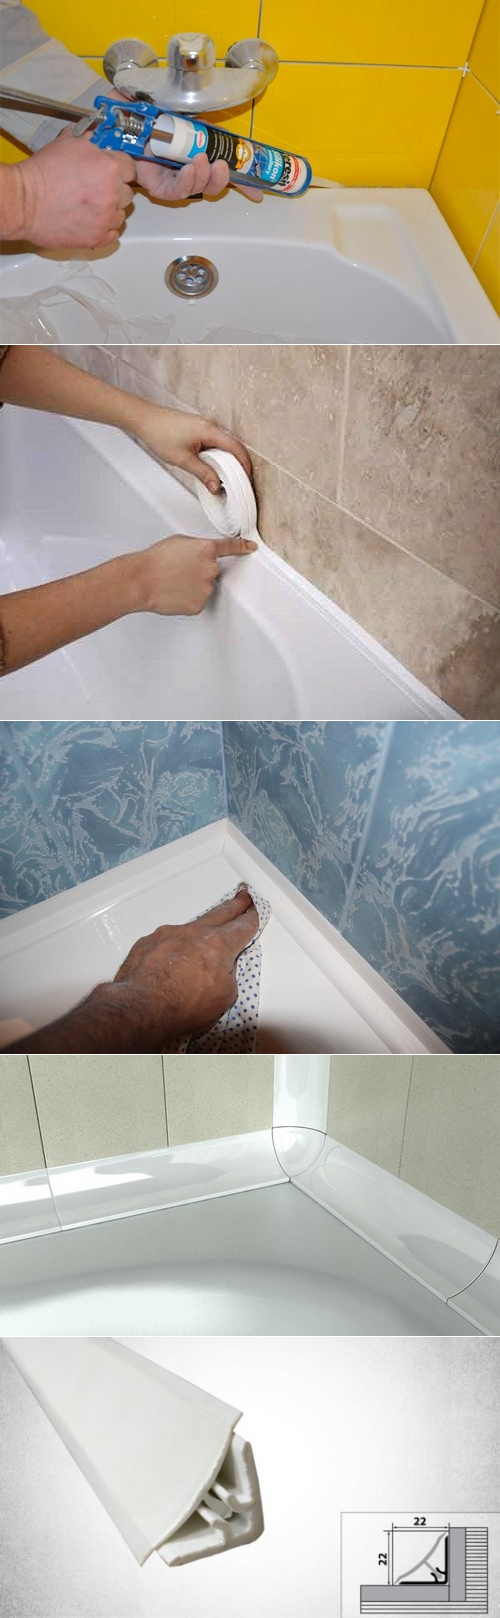 Герметик для ванной - какой лучше? | чем заделать стык между стеной и ванной | все о ремонте